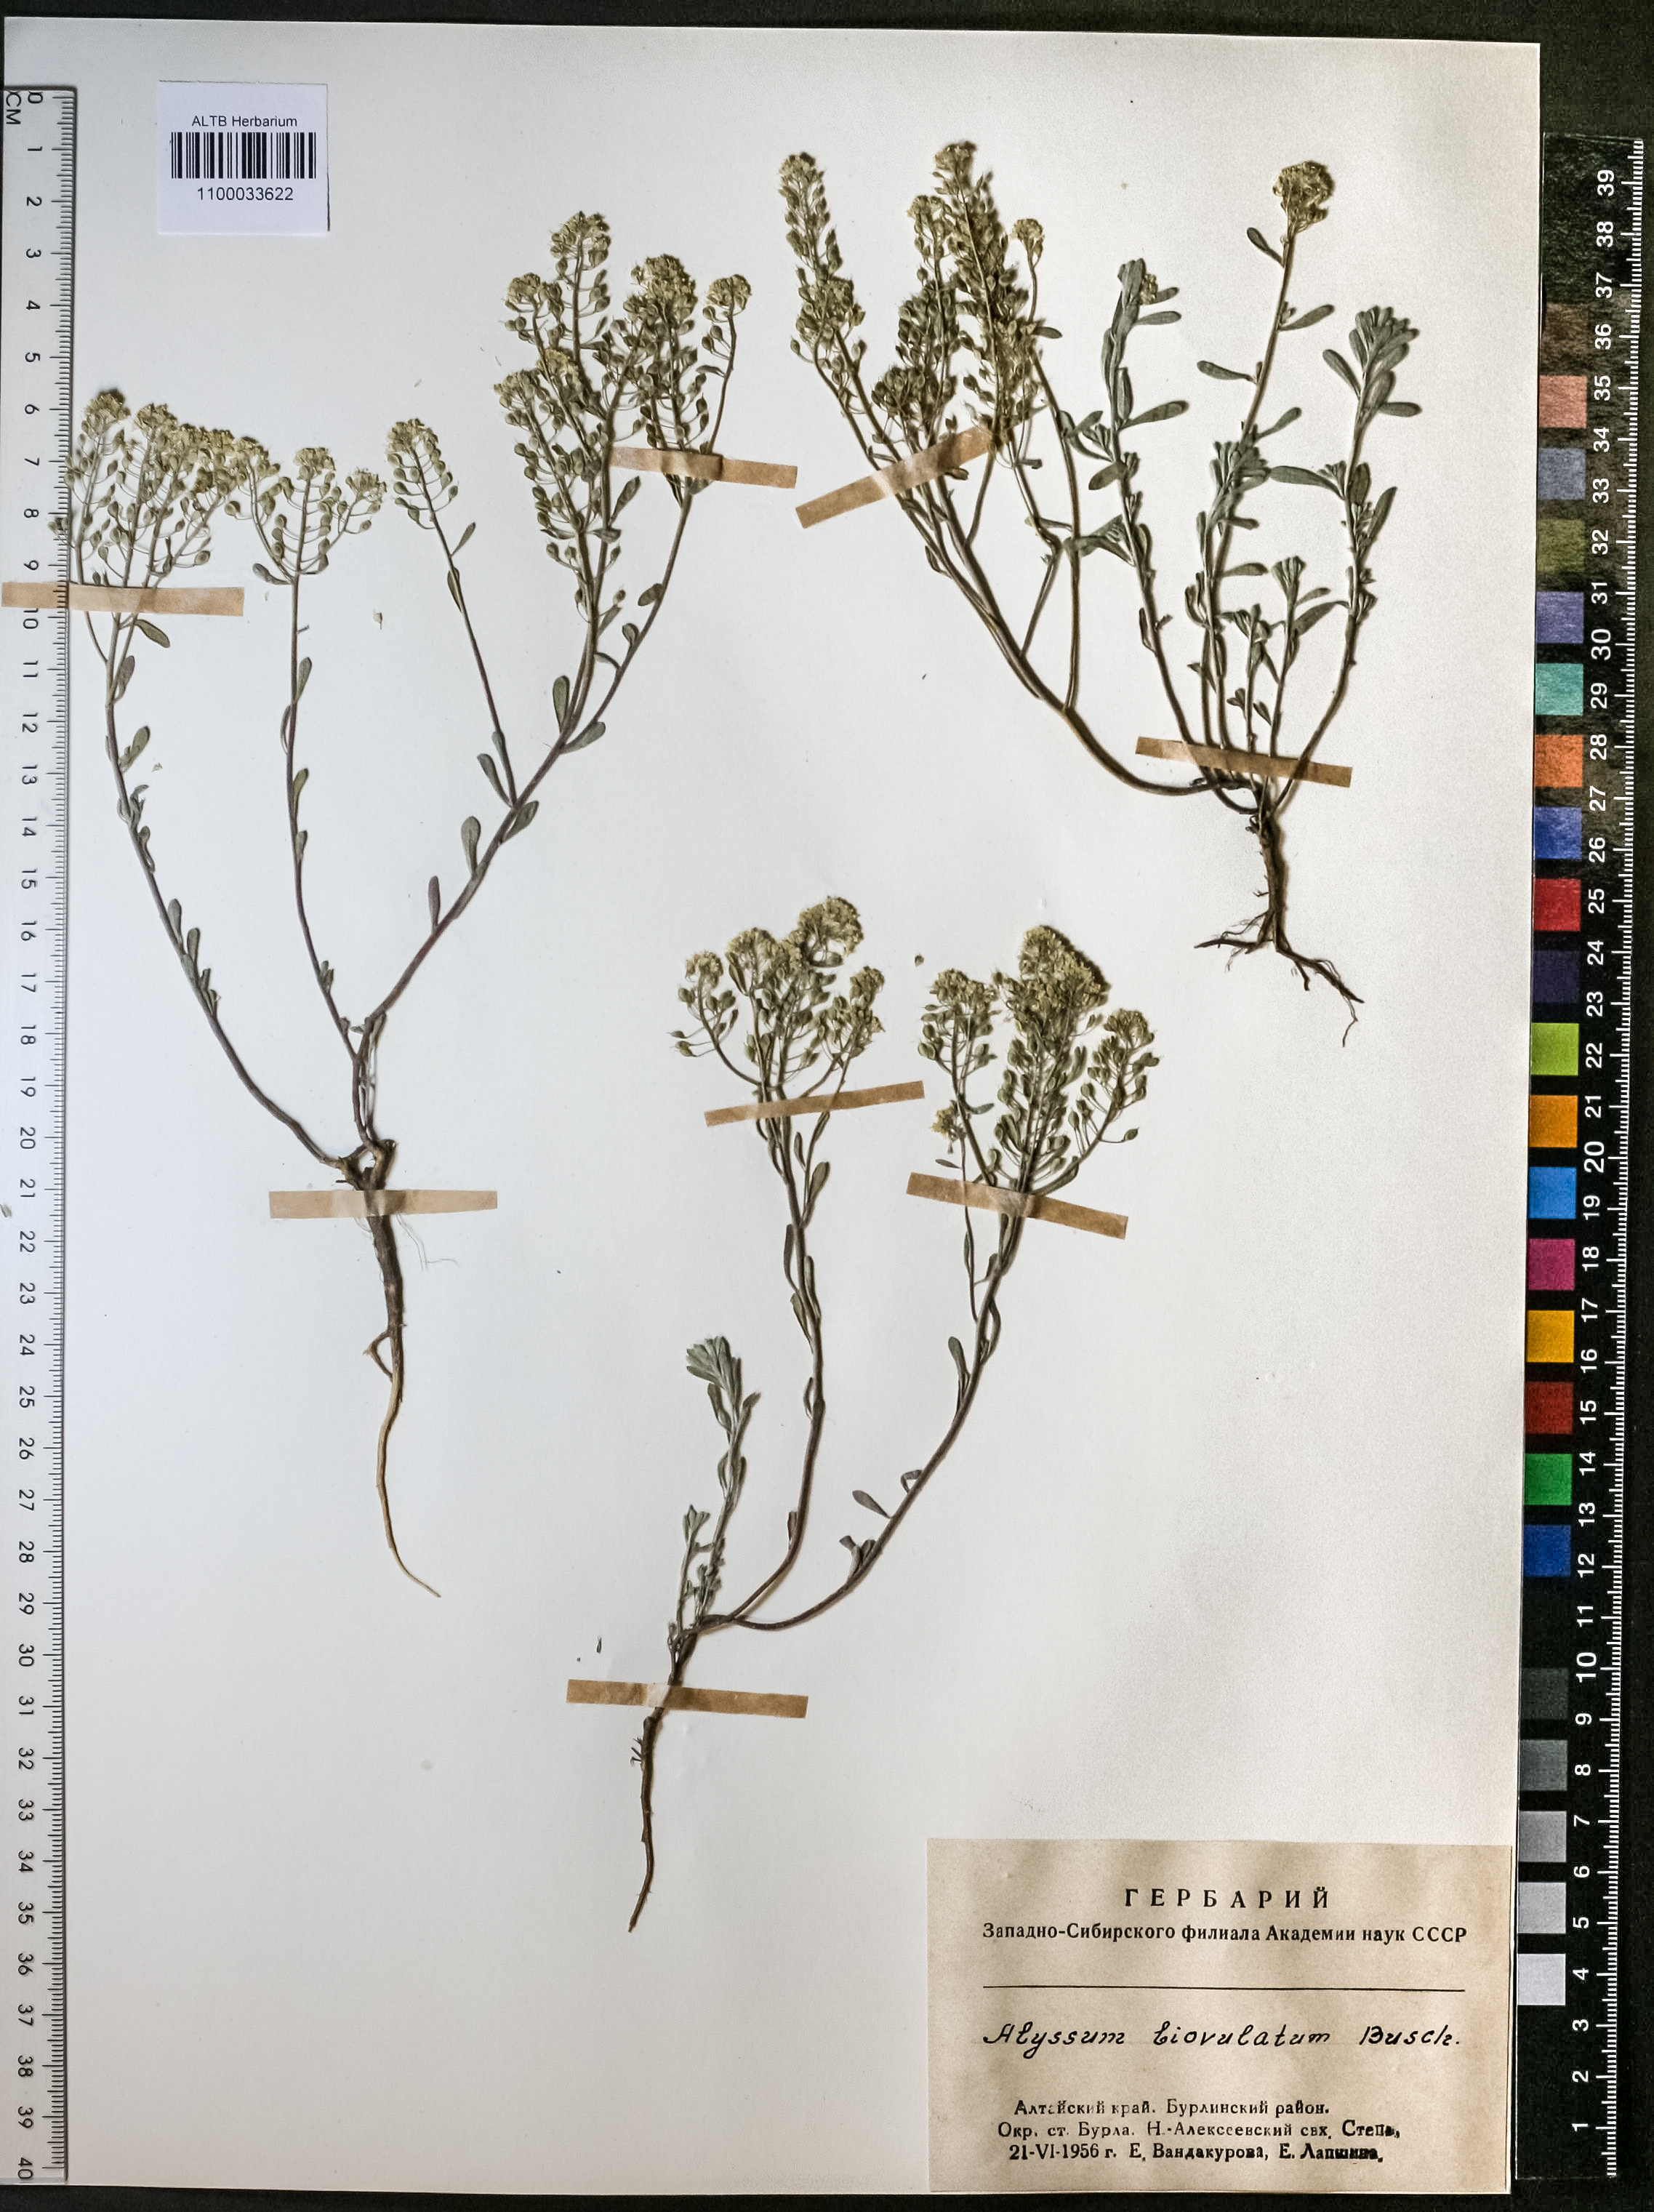 Alyssum biovulatum N.Busch